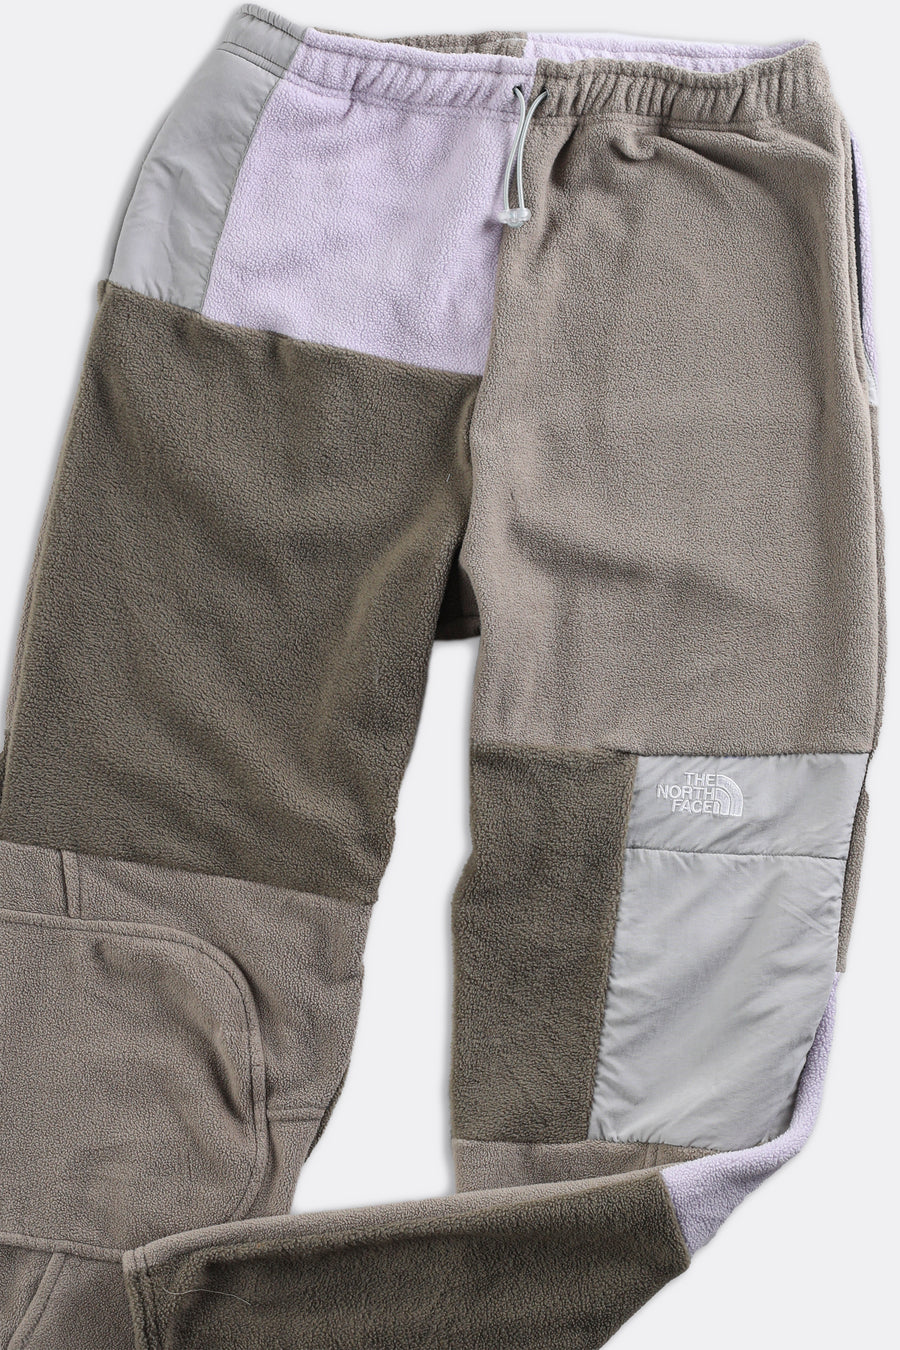 Unisex Rework North Face Patchwork Fleece Pant - Women-M, Men-S